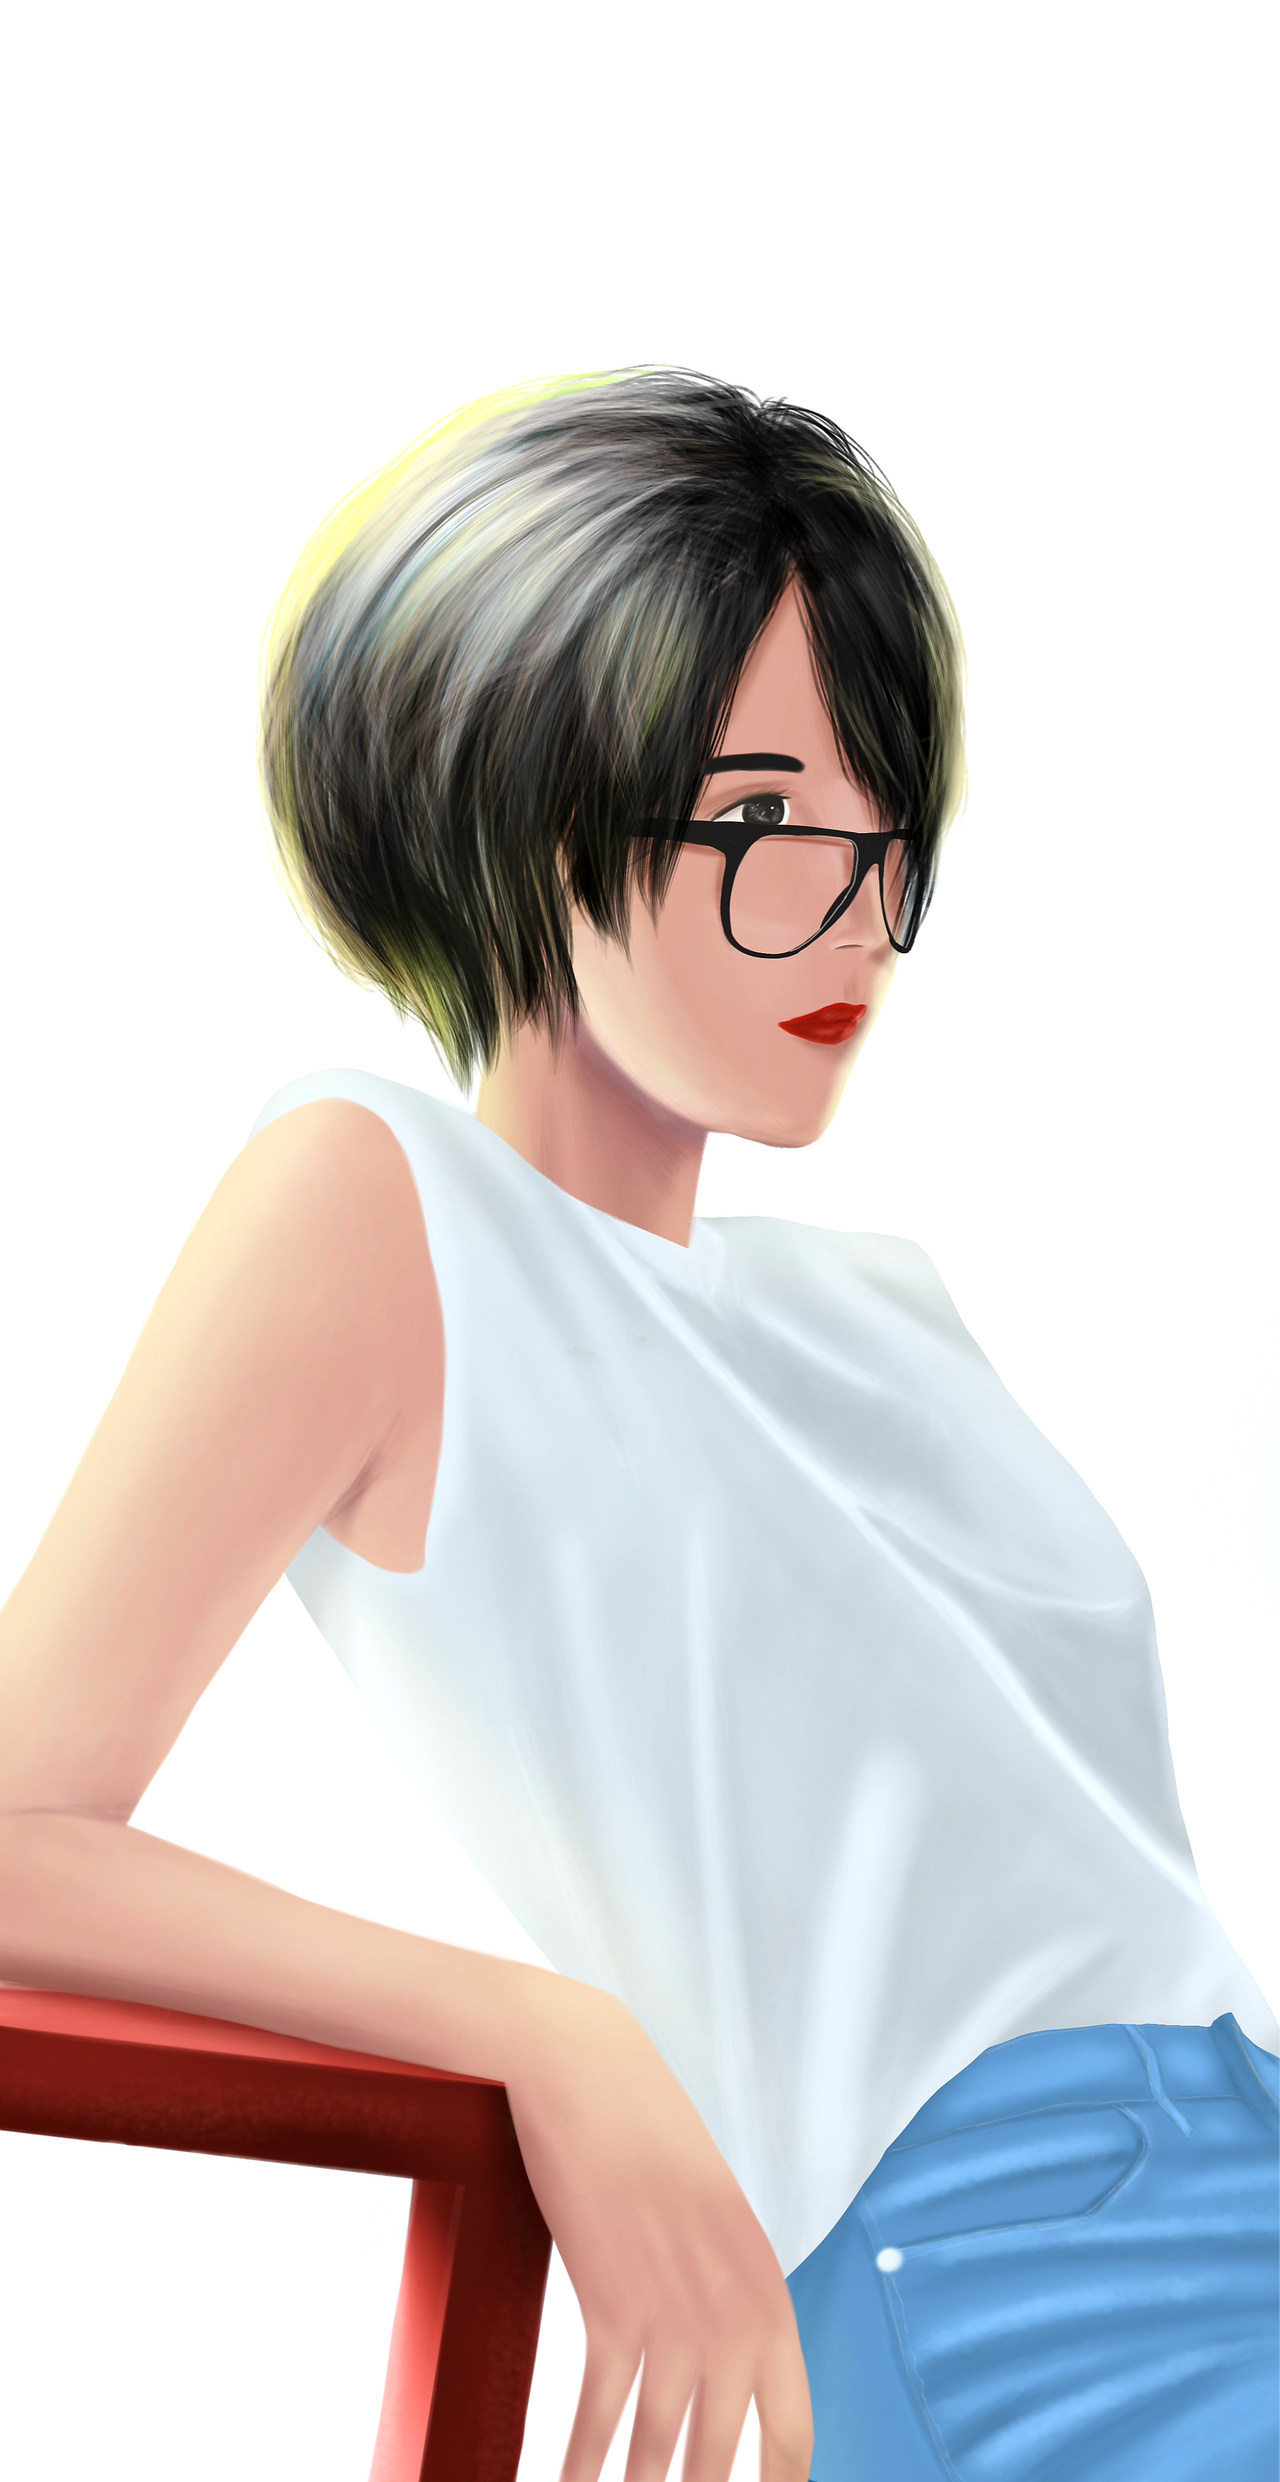 Short hair girl with glasses by SemutAp1 on DeviantArt